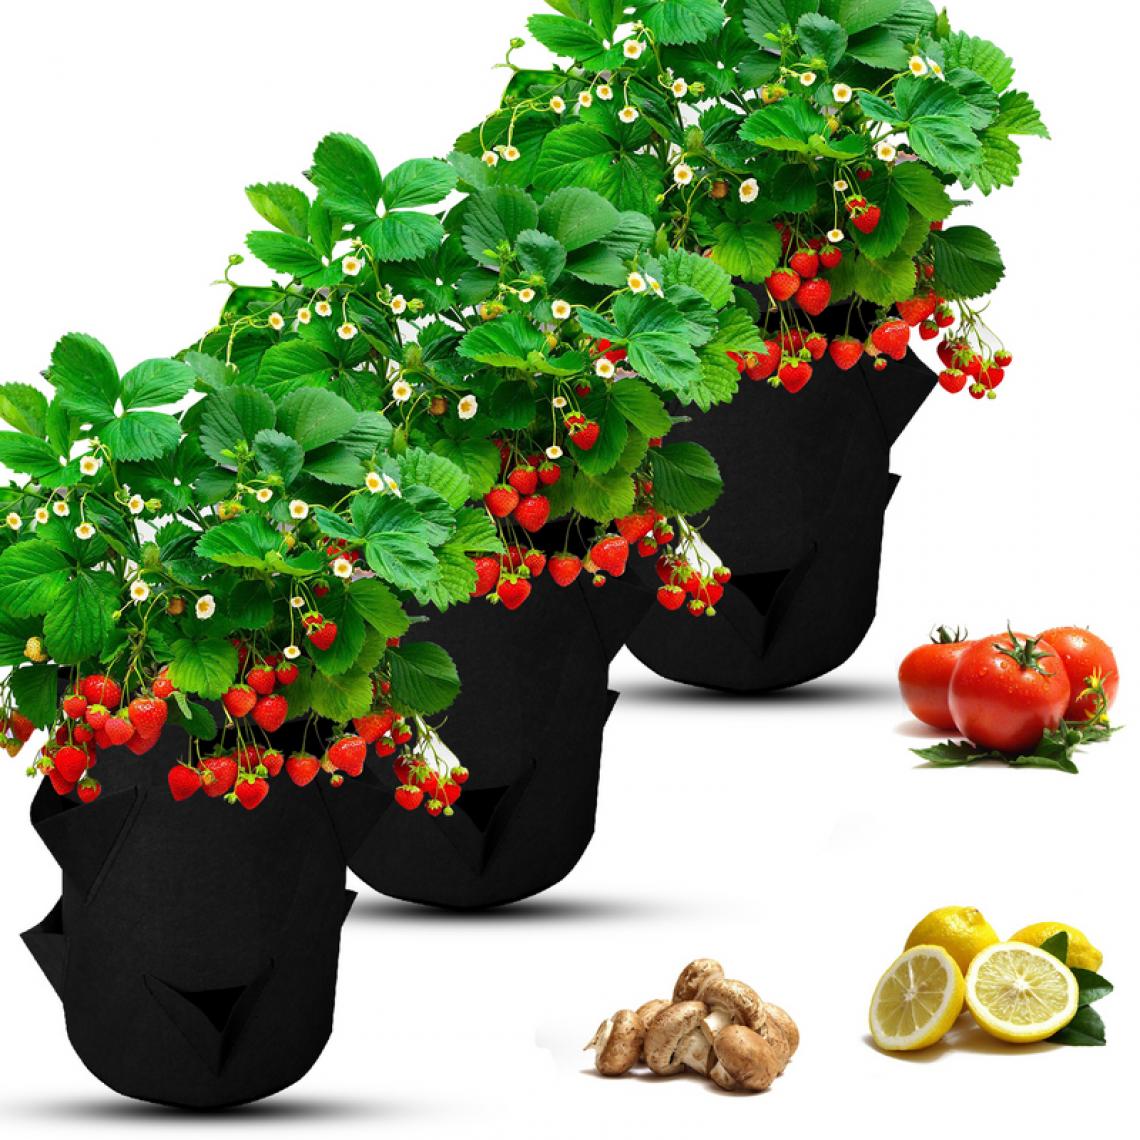 Einfeben - 3x Sac pour plantes Sac pour plantes 5 gallons Sac pour plantes Panier pour plantes Pomme de terre Tomate Fraise - Pots, cache-pots